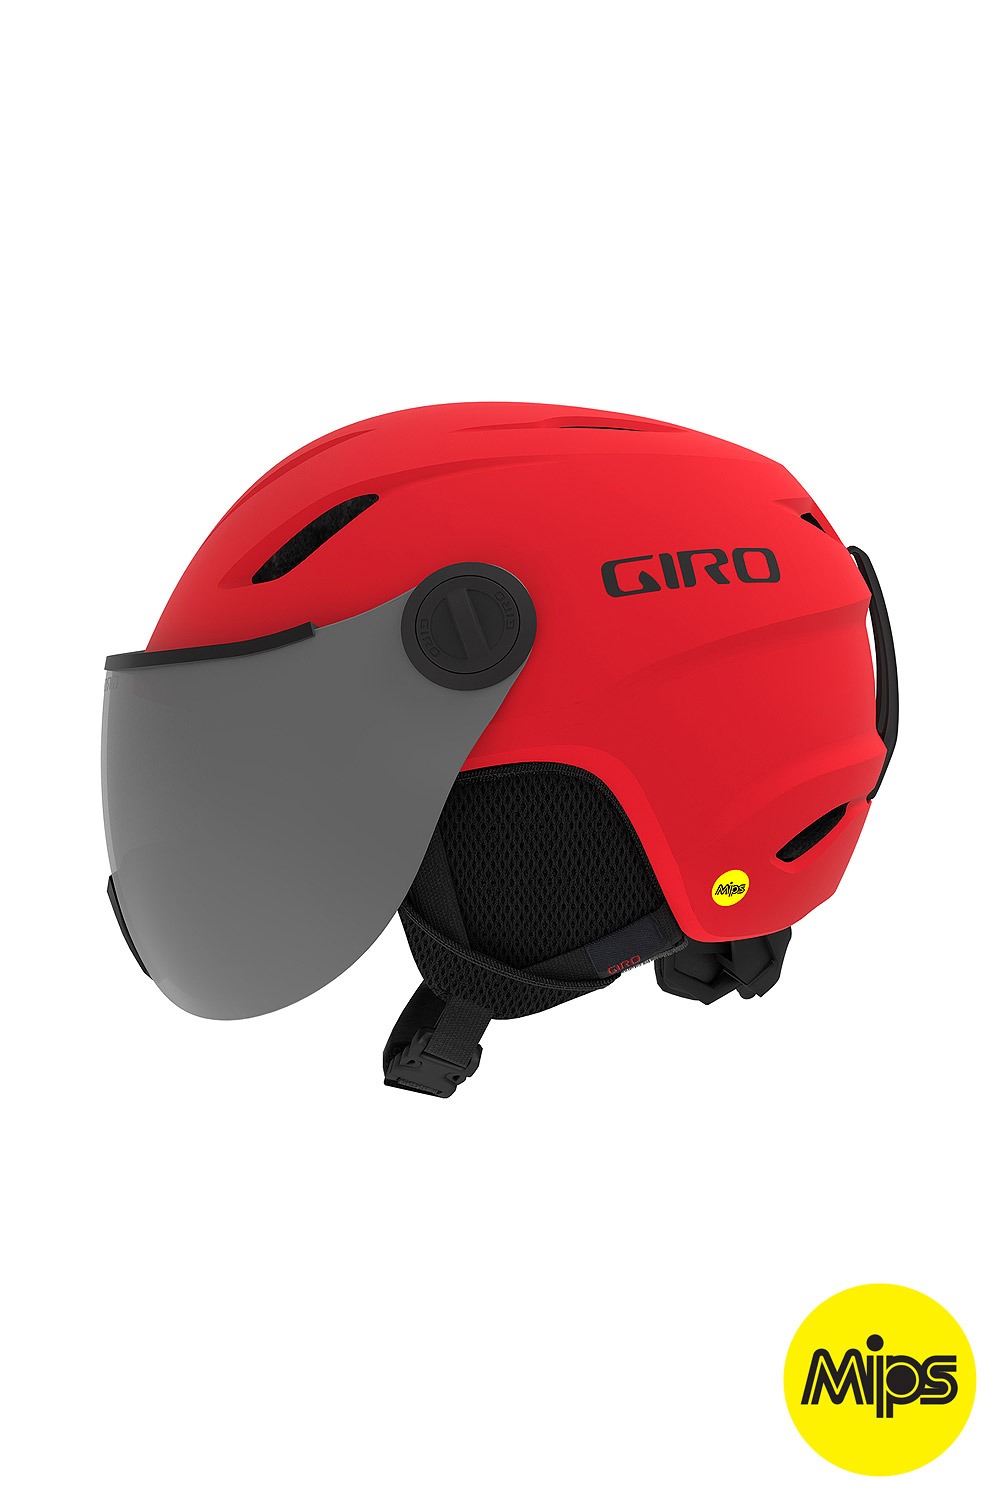 지로 키즈 헬멧 버즈 밉스 2021 GIRO_YOUTH BUZZ MIPS_MATTE BRIGHT RED_MIPS시스템/키즈헬멧_DFGO018RE